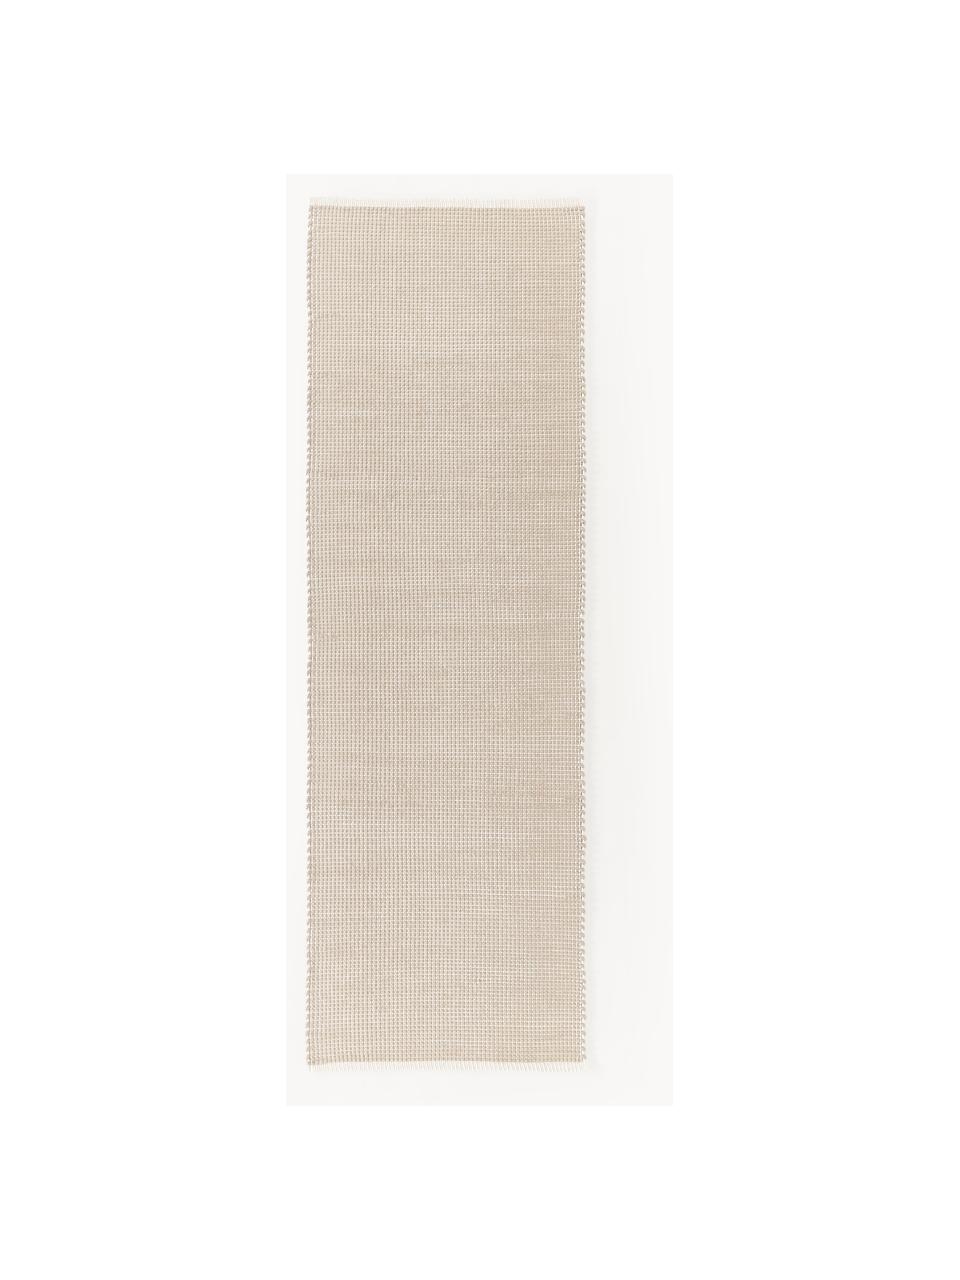 Passatoia in lana fatta a mano Amaro, Retro: 100% cotone Il materiale , Beige chiaro, bianco crema, Larg. 80 x Lung. 250 cm